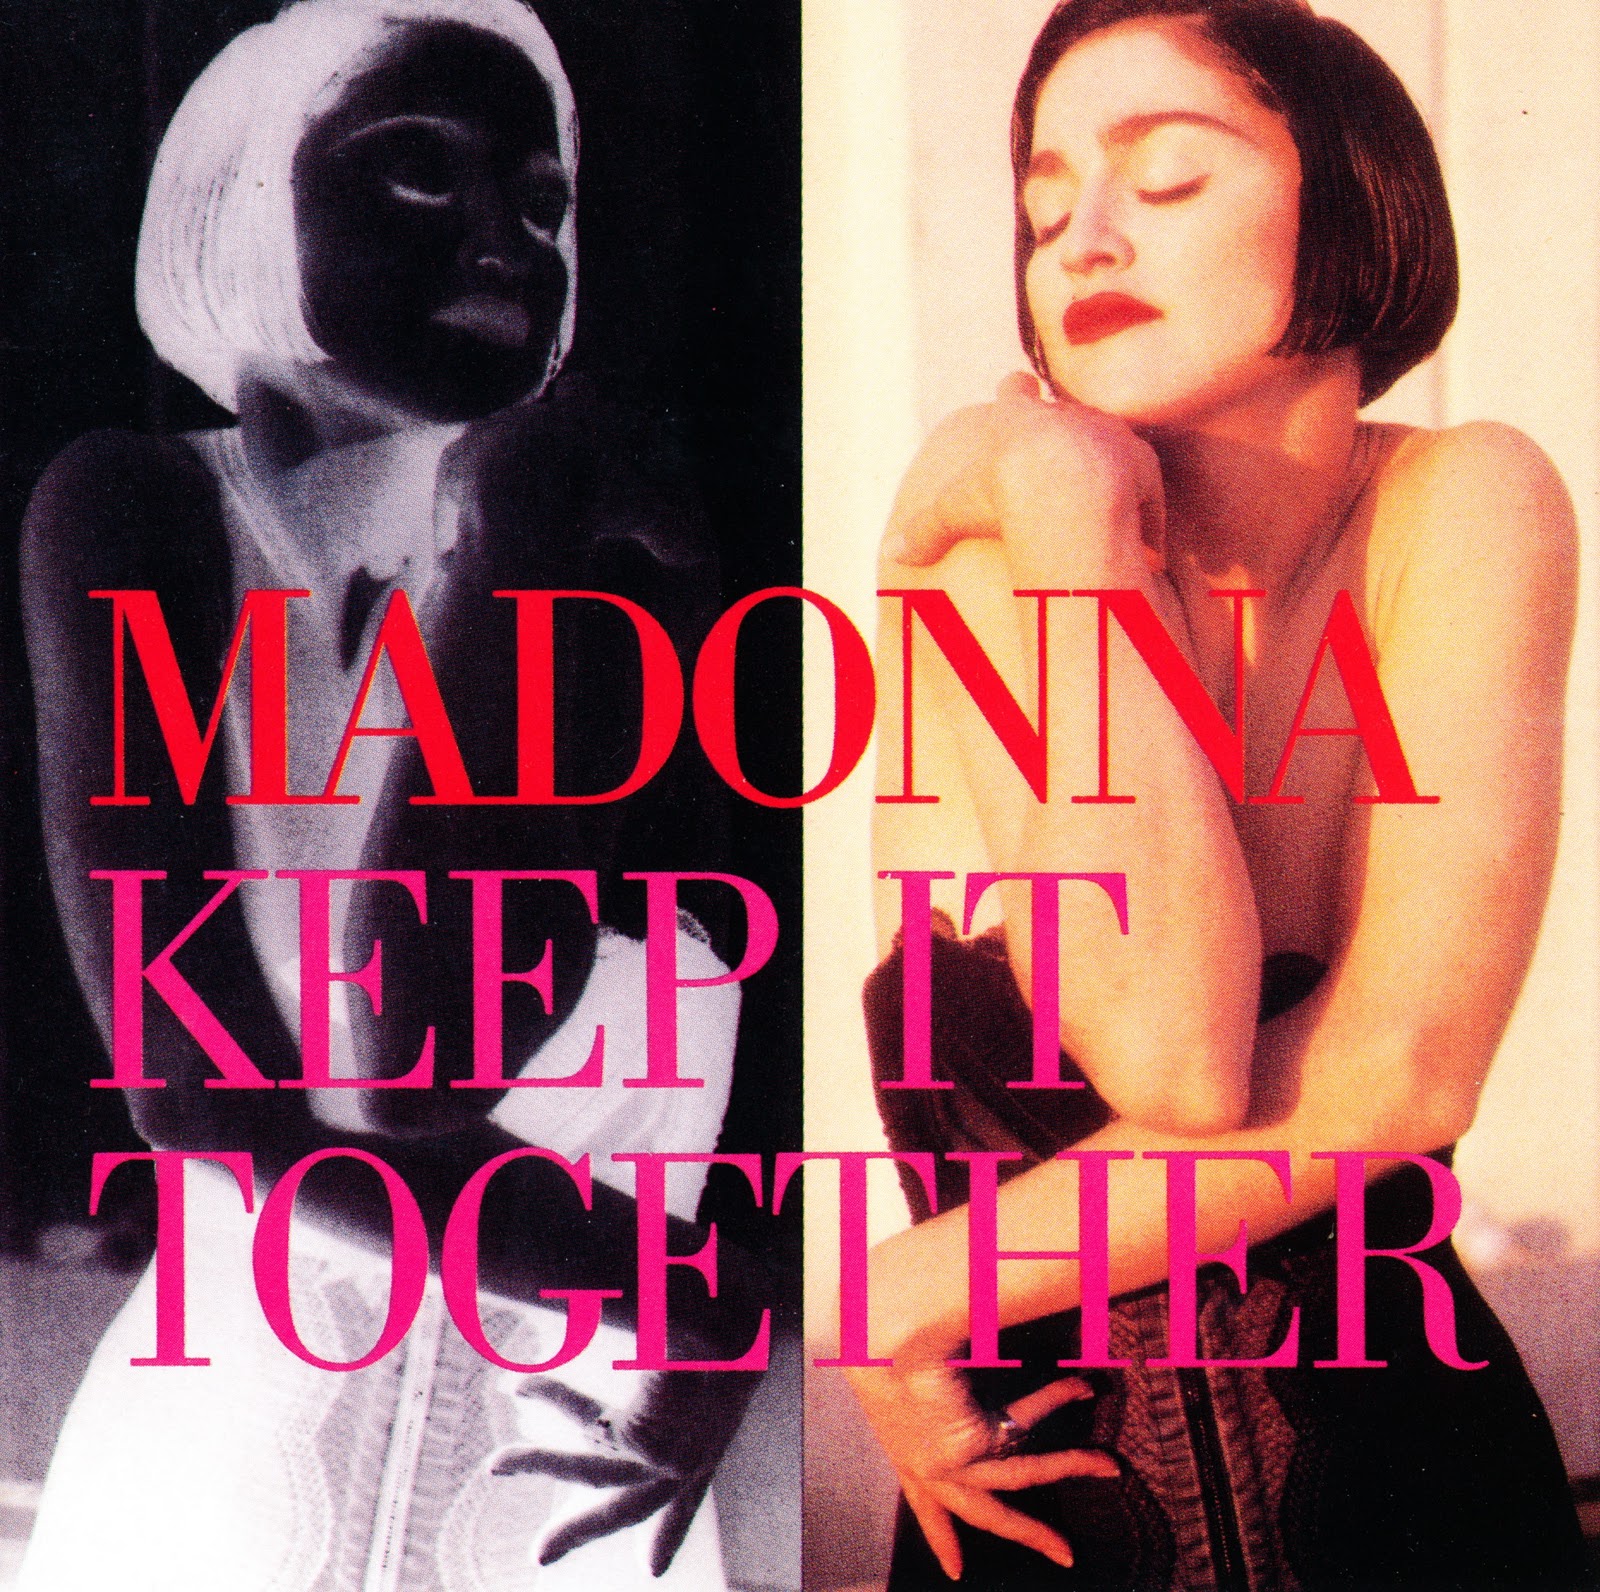 http://2.bp.blogspot.com/-ozrGKAgm9XM/ToN6_TzLJBI/AAAAAAAACdw/T5_0x_35GKI/s1600/Madonna+Keep+FR.jpg